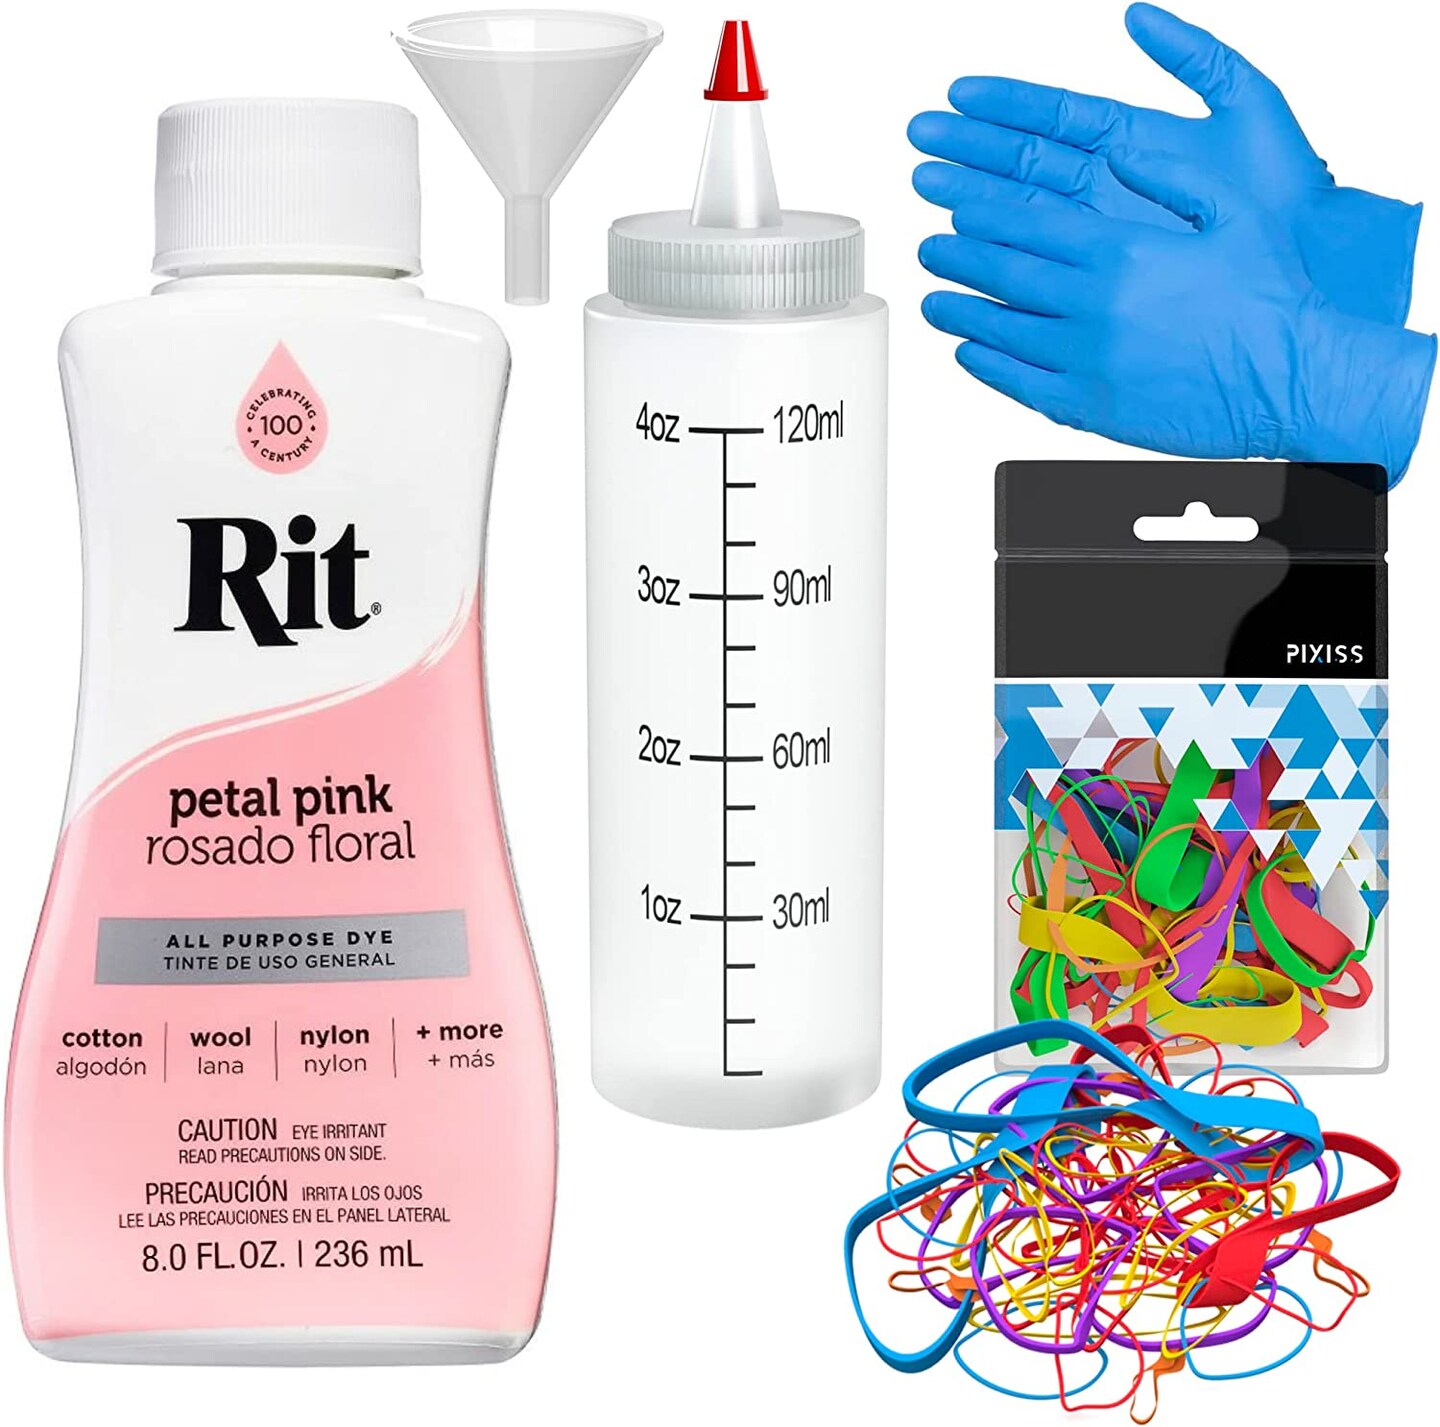 Rit Dye Liquid Petal Pink All-Purpose Dye 8oz, Pixiss Tie Dye